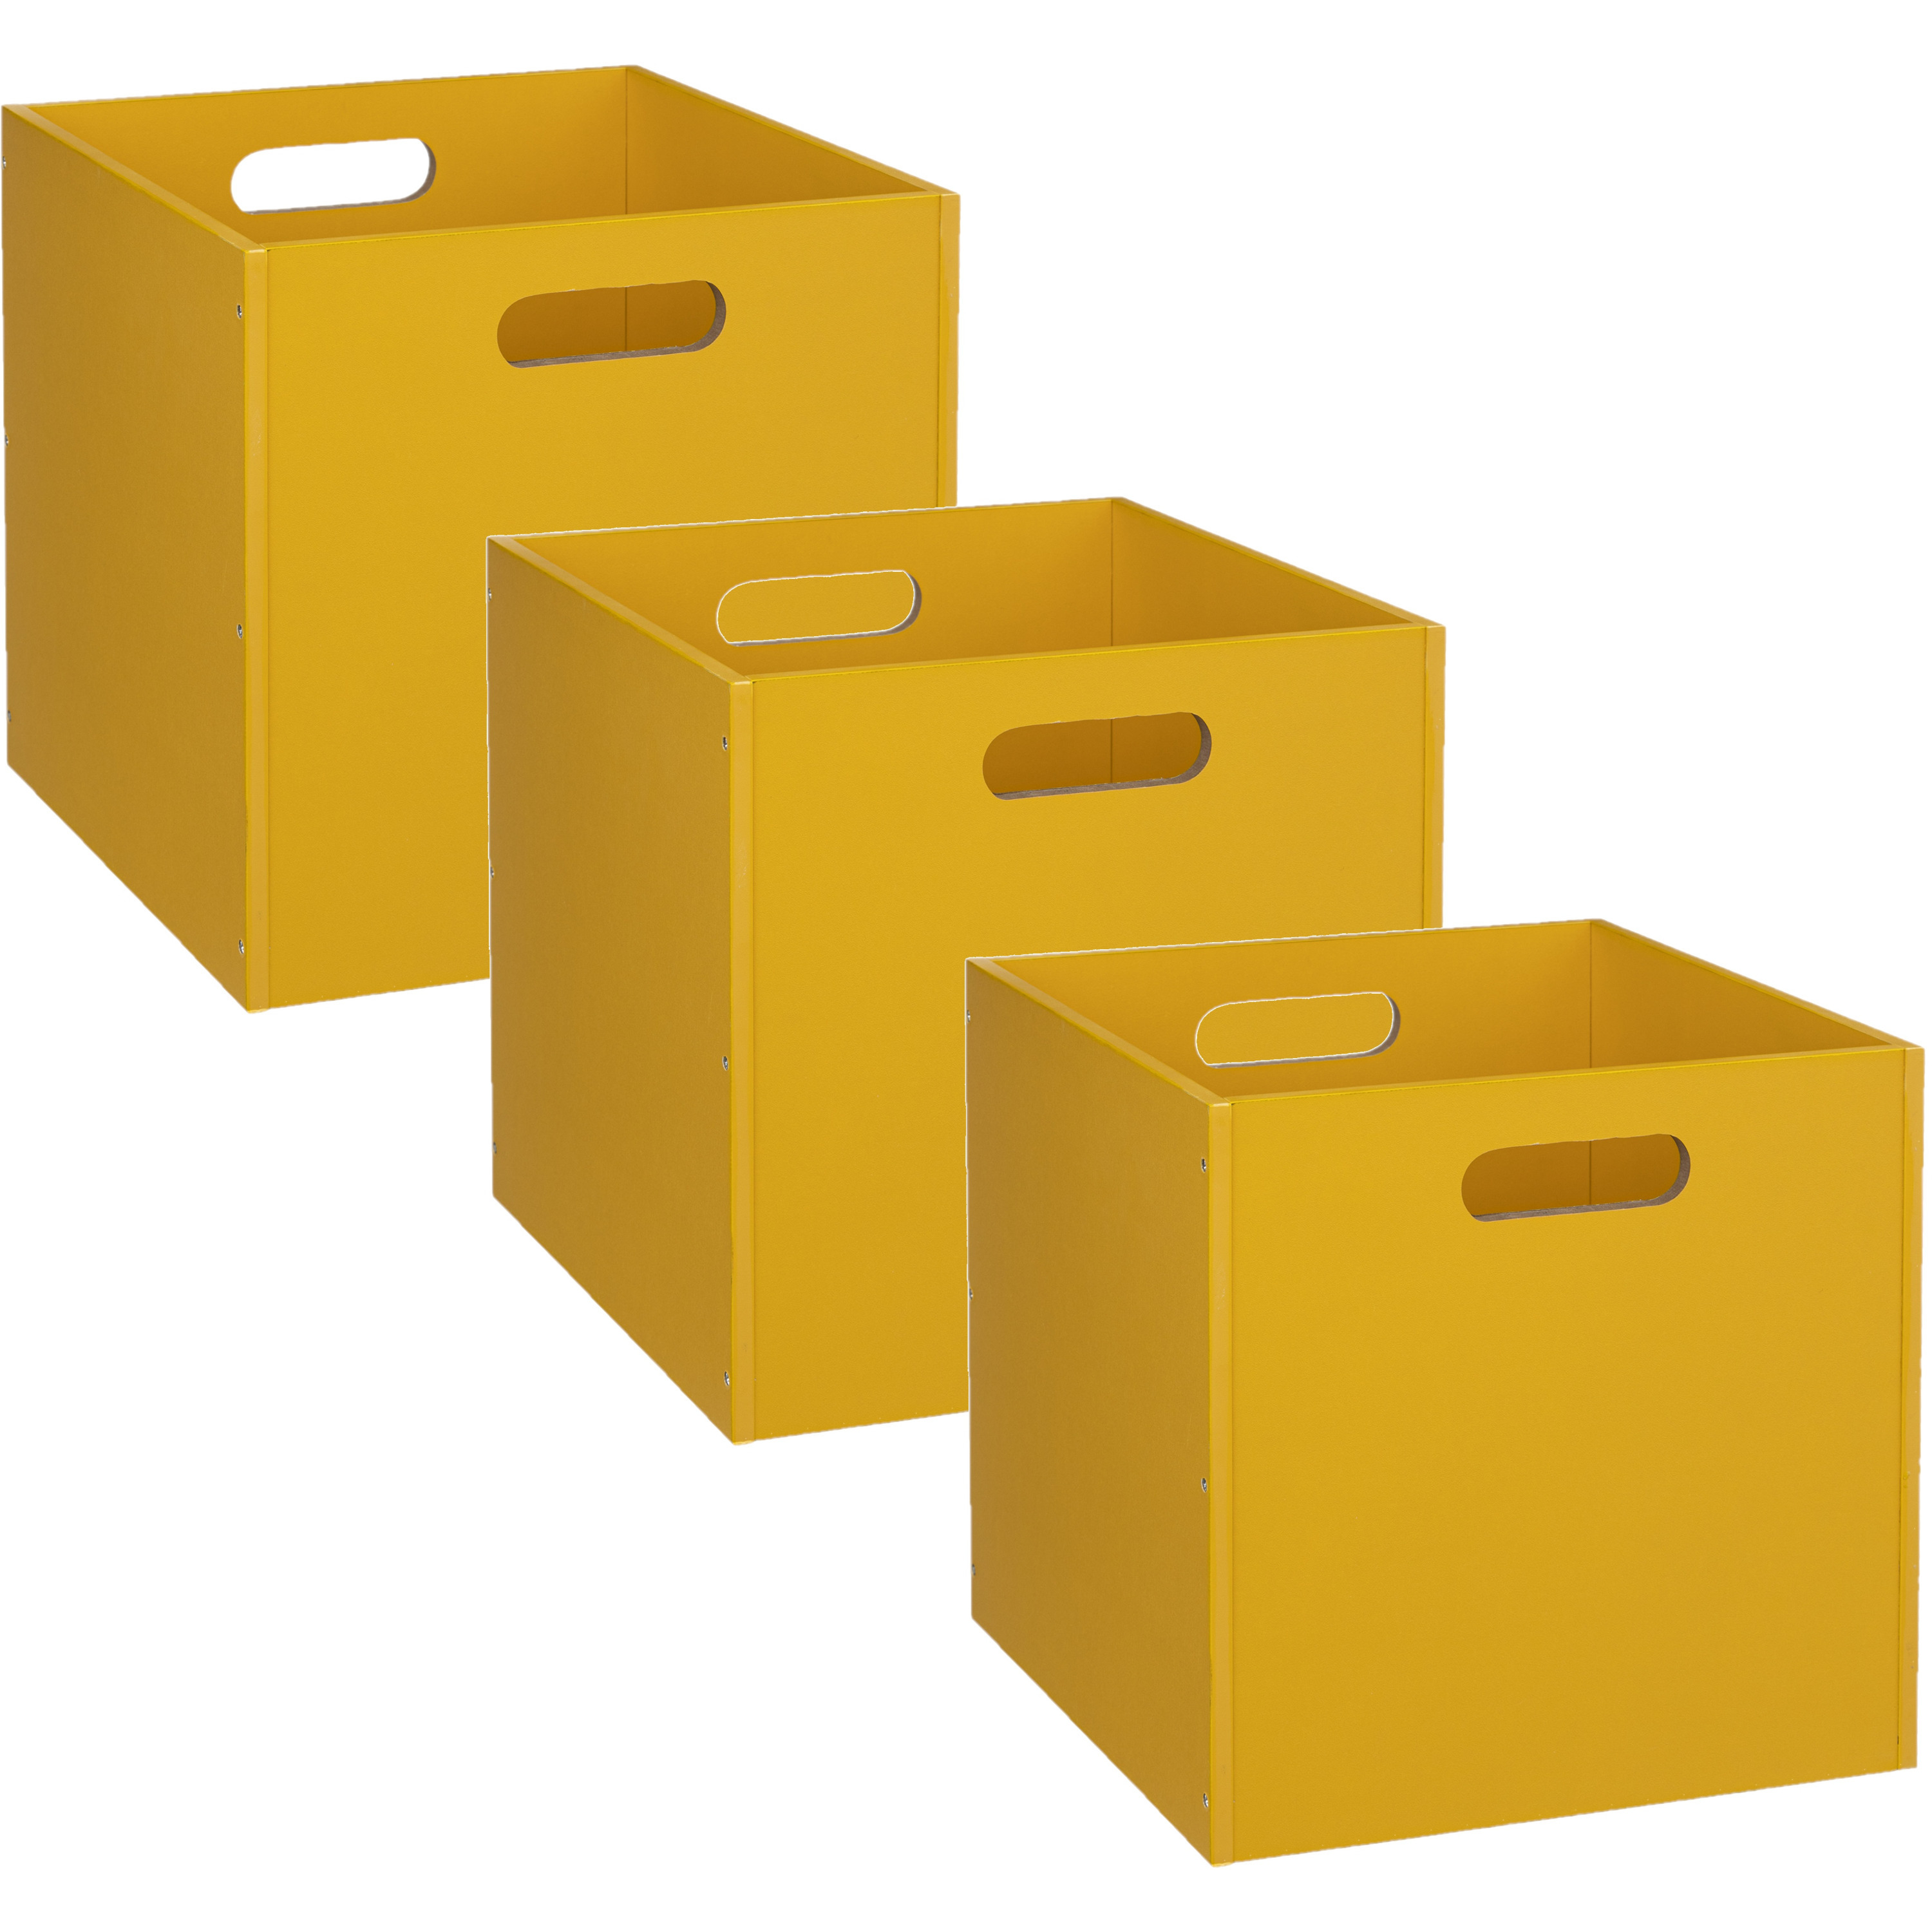 3x Stuks opbergmand/kastmand 29 liter geel van hout 31 x 31 x 31 cm -